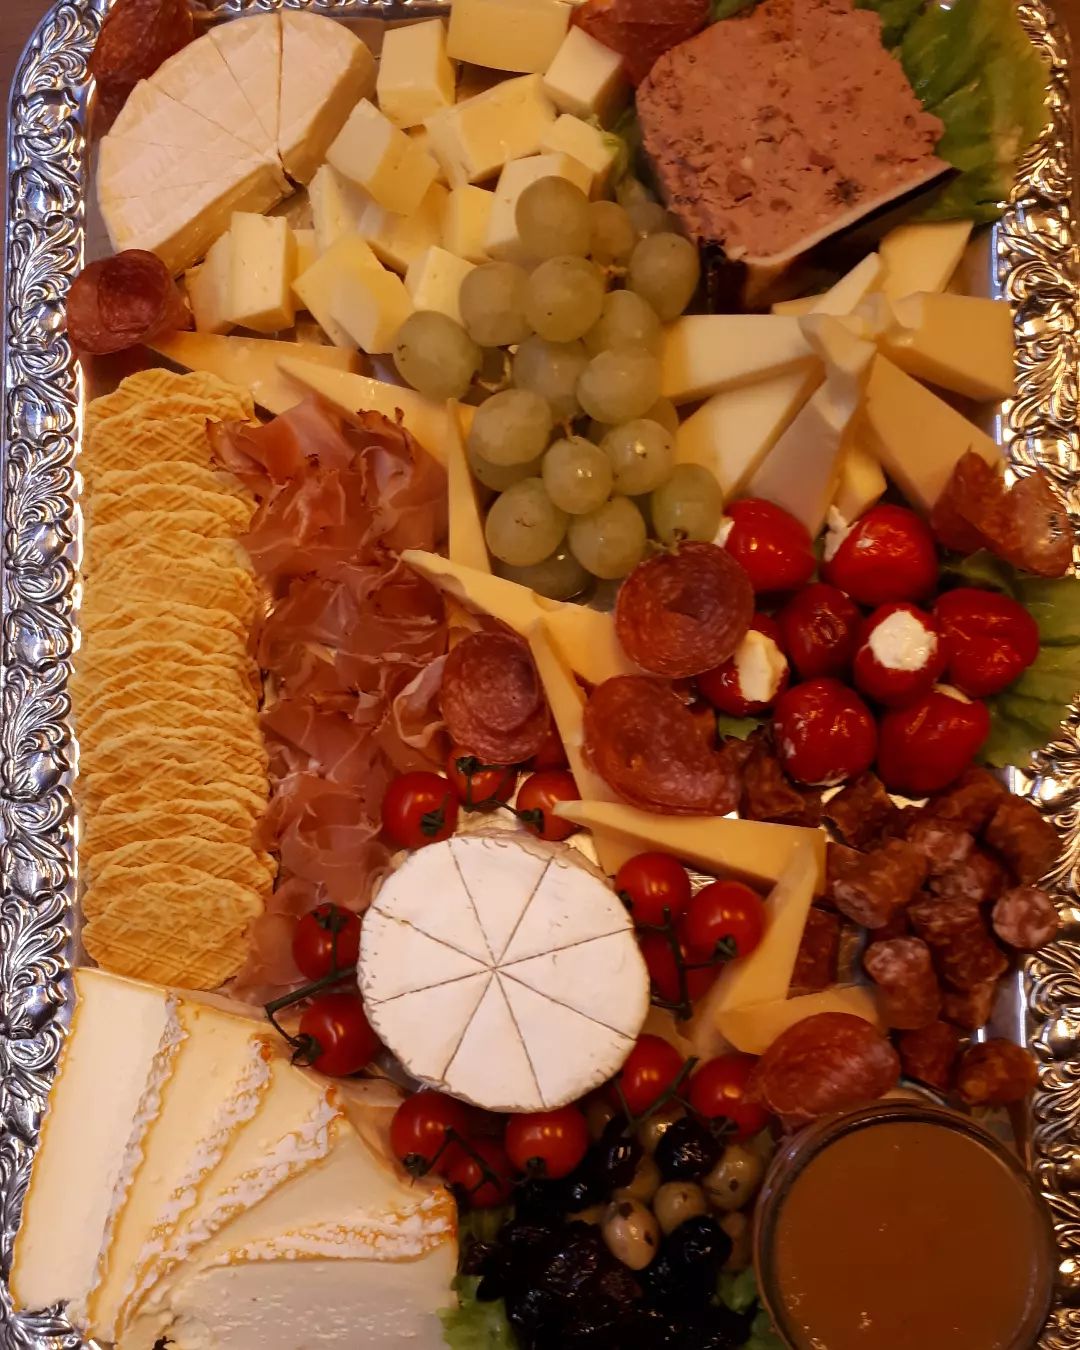 Leckeres Geburtstagsfrühstück 😋🧀🥓💐
#käse #cheese #fromage #formaggio #heidelbergfood #heidelberg #vegetarisch #käseecke #küchererskäseecke #käseundwein #heidelberg #hendesse #handschuhsheim #vegetarisch #ichliebekäse #schmankerl #käselienbe #delikatessen #spezialitäten #käsemachtglücklich  #leckeraufsbrot #savoirvivre #feinkost #feinschmecker #käseplatte